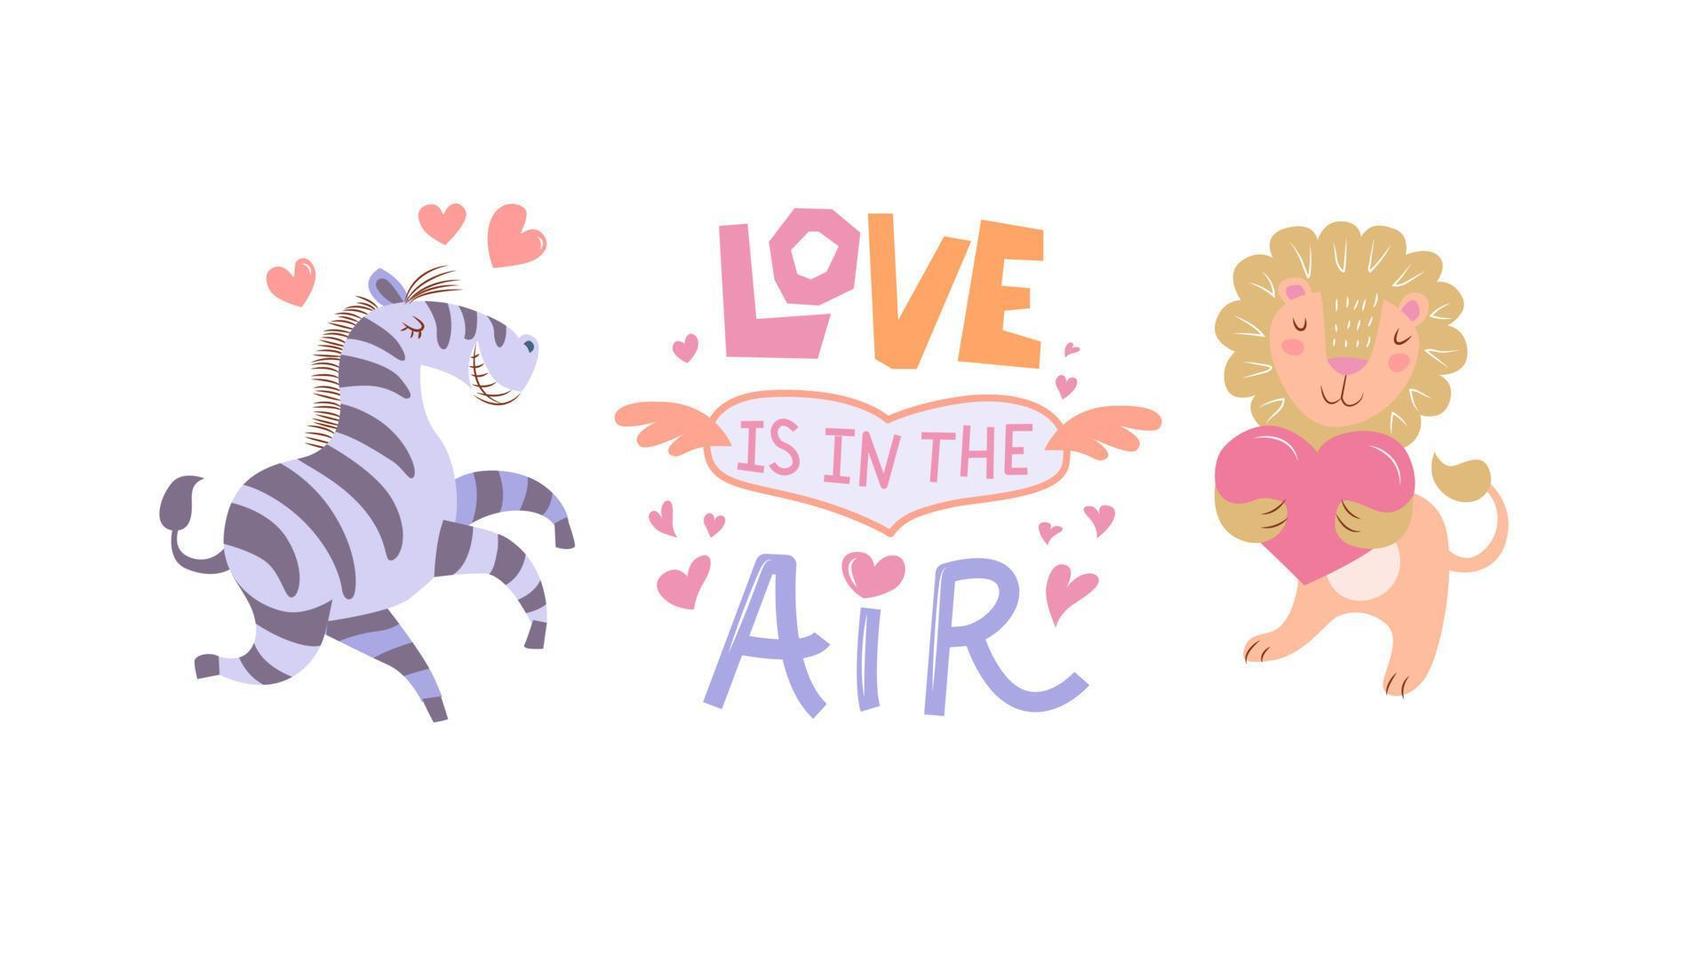 söt djur par i kärlek - zebra och lejon som innehar en hjärta i dess tassar. de inskrift - kärlek är i de luft. Lycklig hjärtans dag vykort. vektor illustration